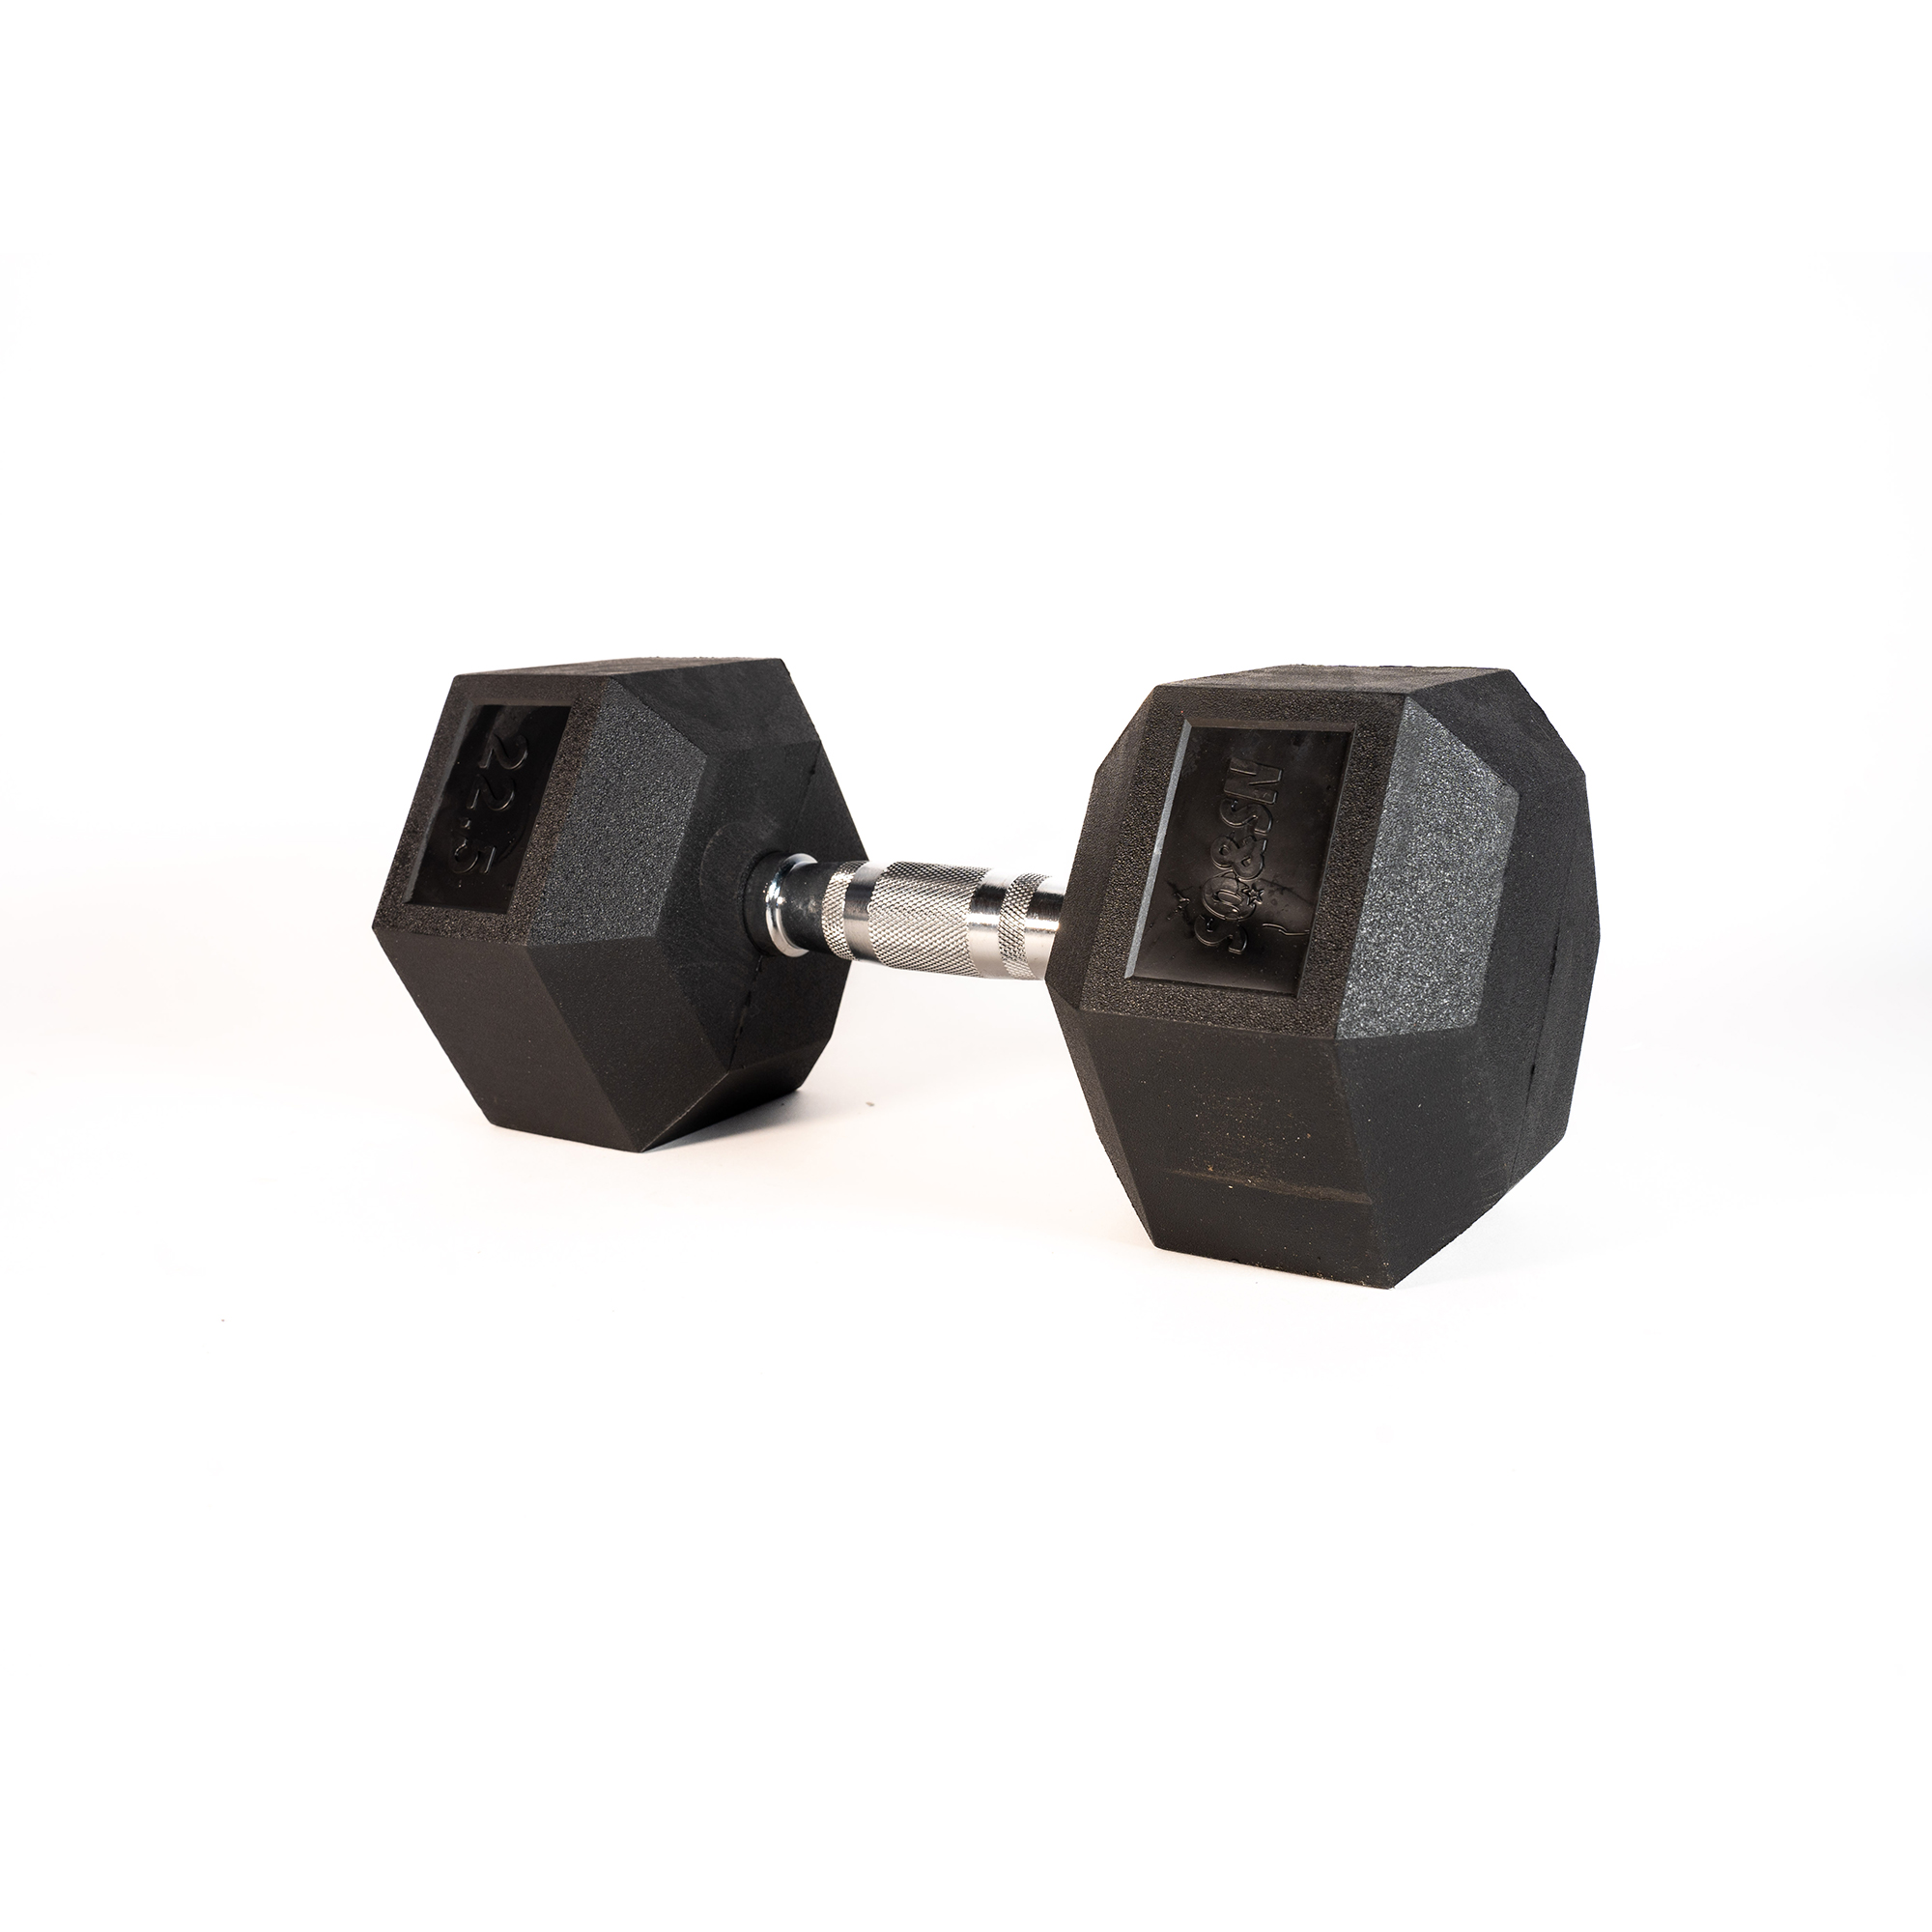 SQ&amp;SN Hexagon Håndvægt (22,5 kg) med forkromet greb. Udstyr til crossfit træning, styrketræning og funktionel træning